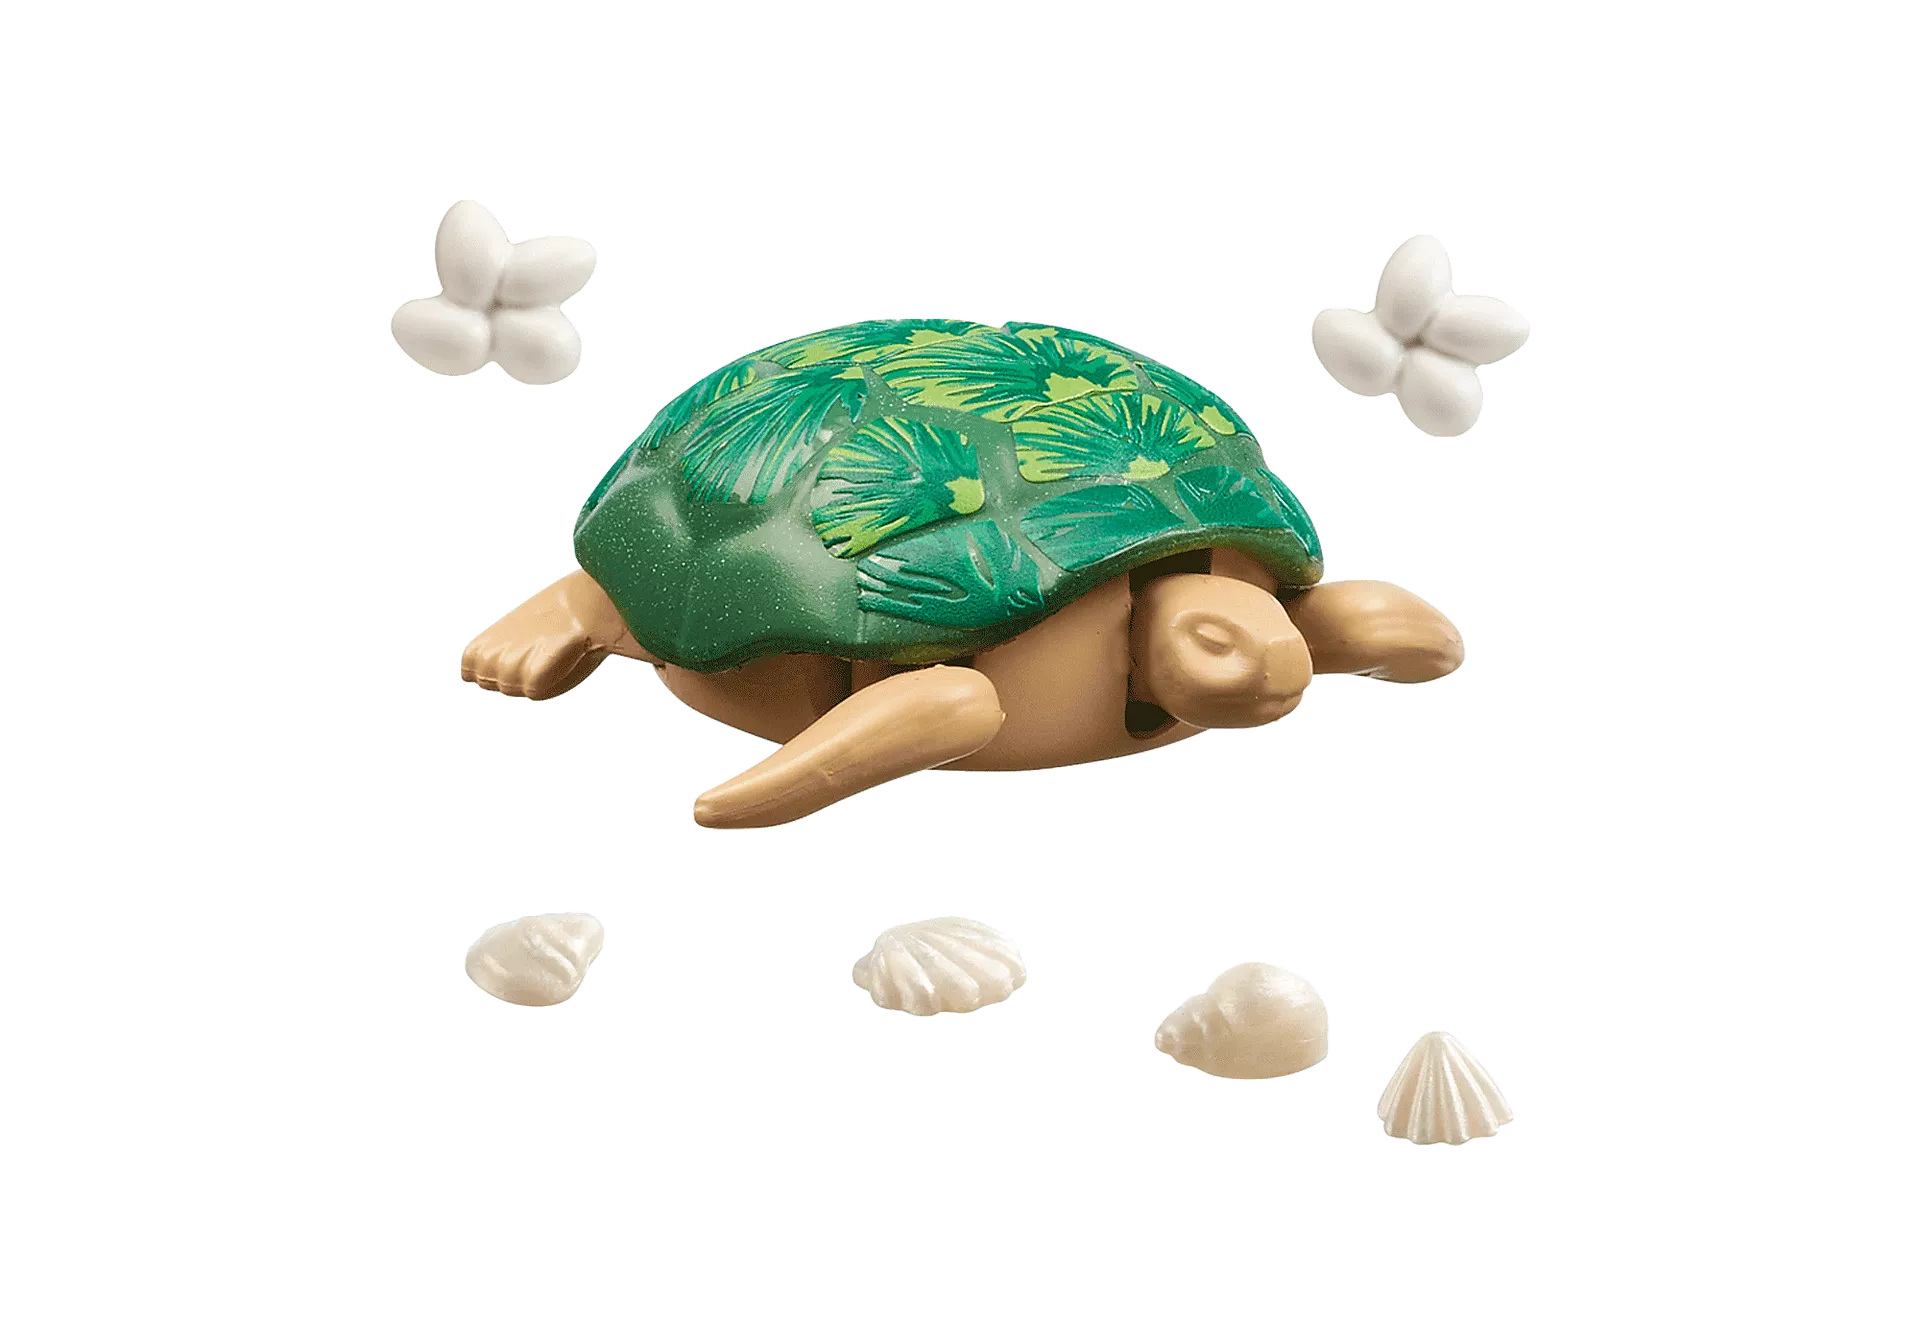 Playmobil Wiltopia - Giant Tortoise